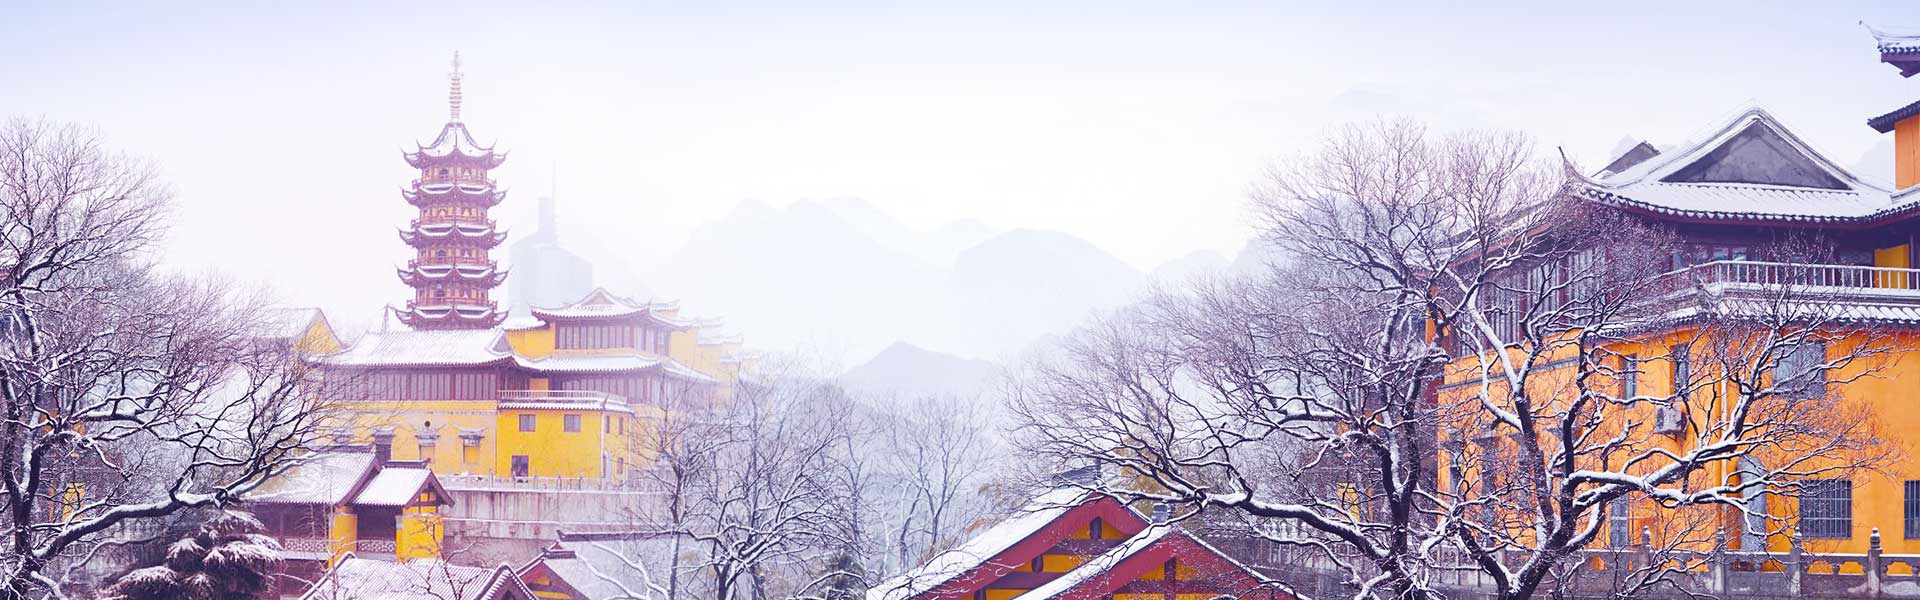 https://ru.gonanjingchina.com/sites/default/files/Experience_the_Winter_in_Nanjing_2.jpg